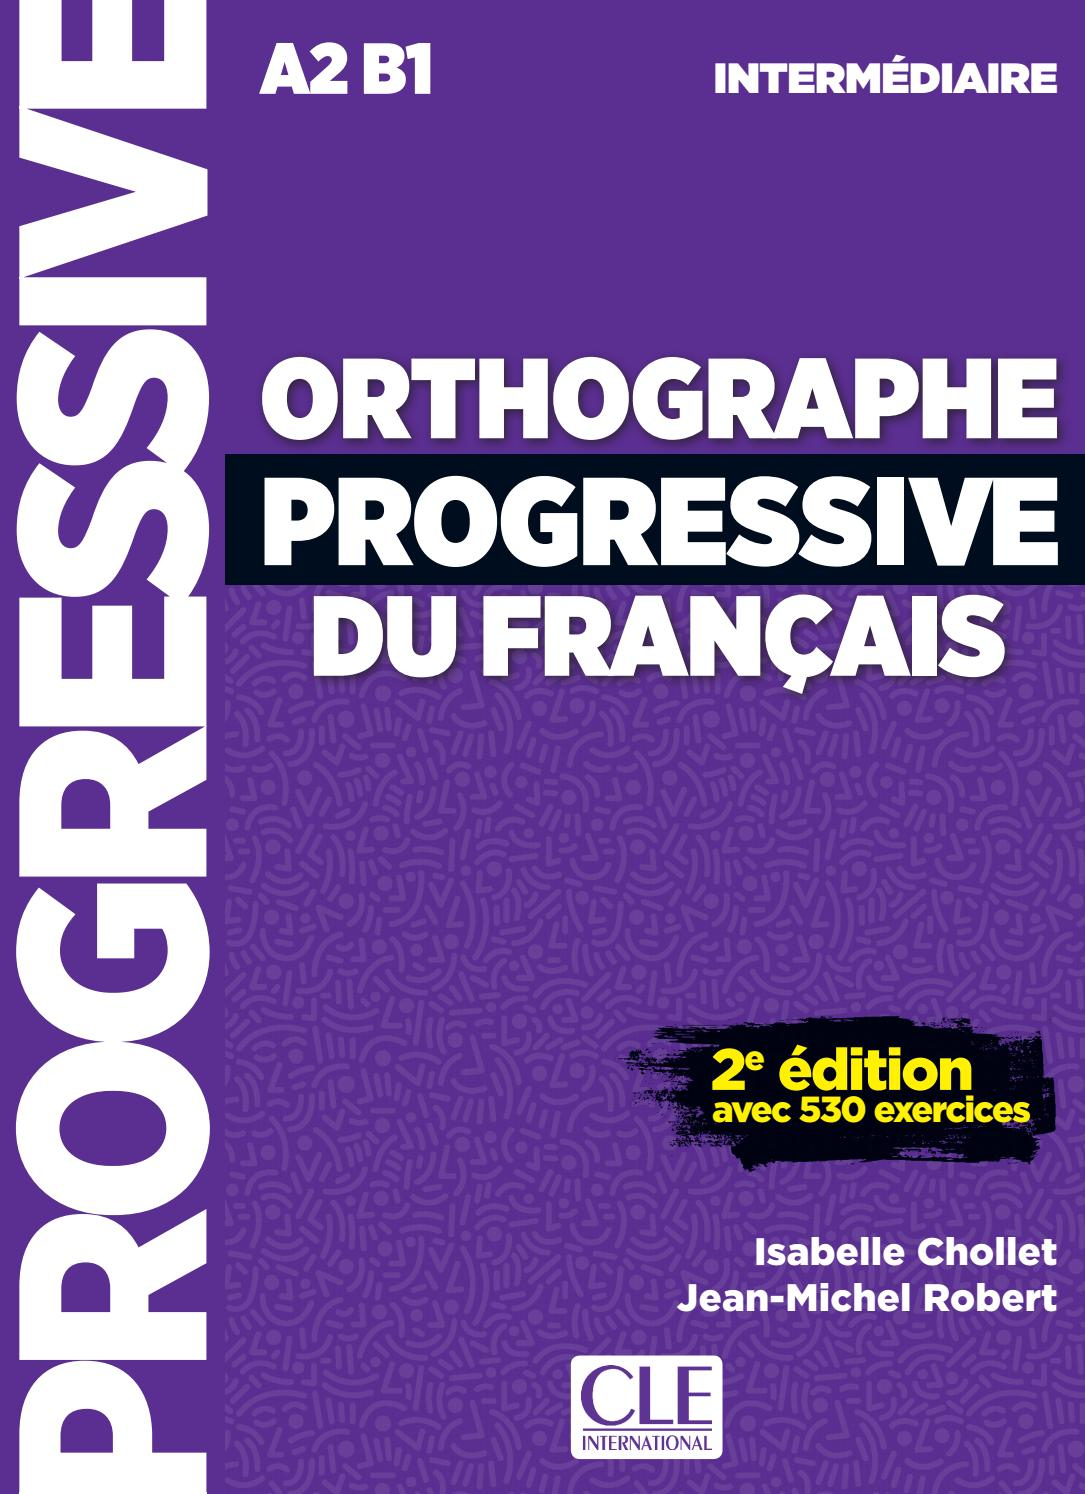 Orthographe Progressive Du Français A2B1 By Cle avec Salle De Bain Orthographe